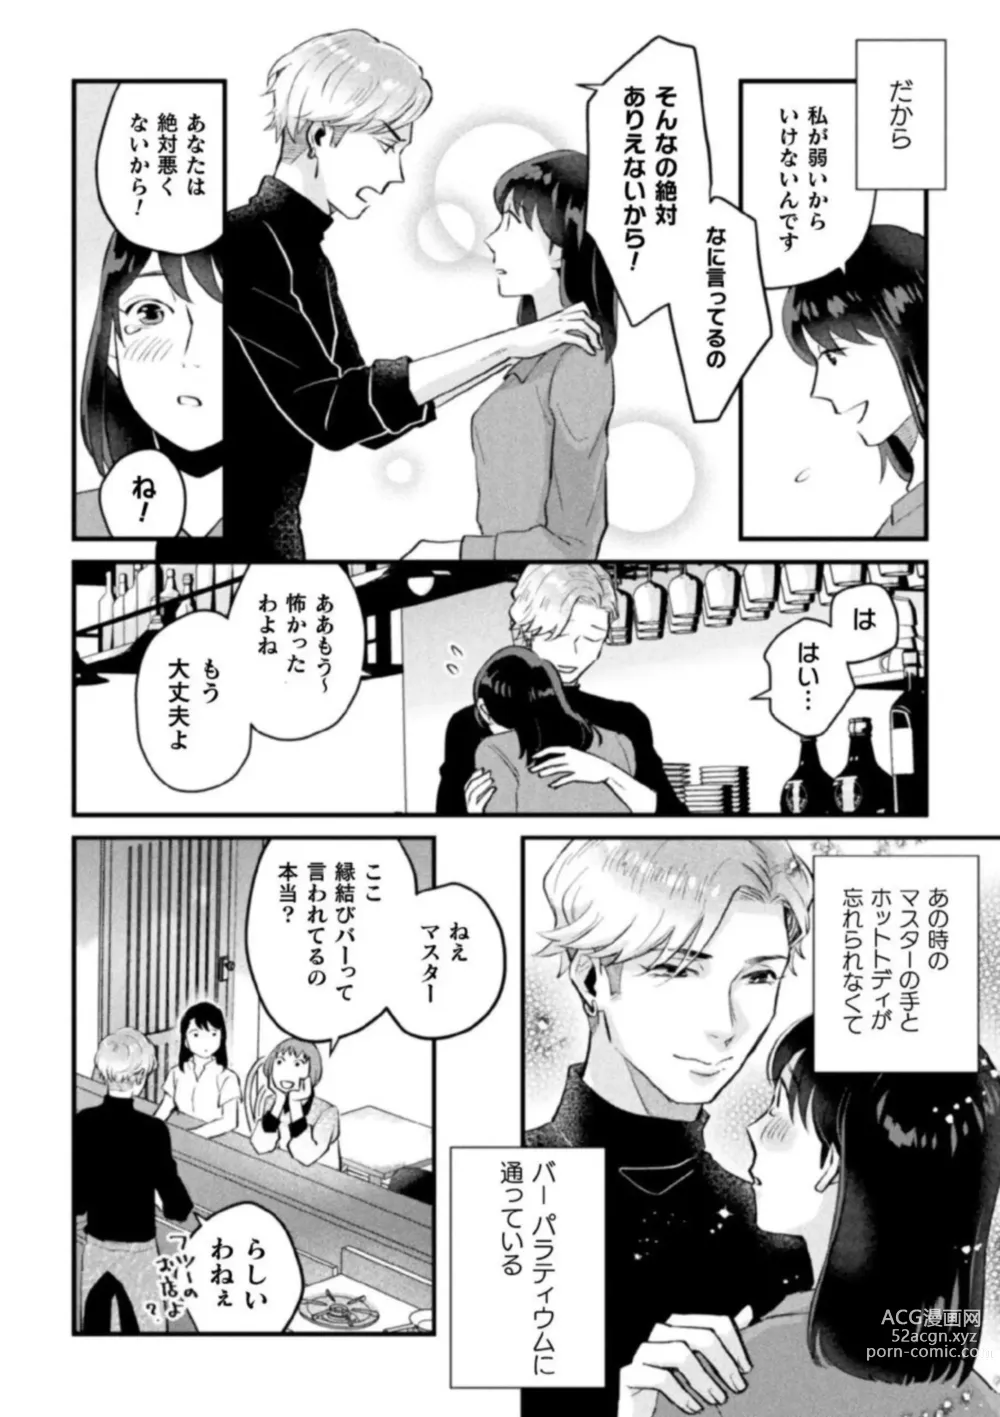 Page 6 of manga Shokora Shukureansorojīshokorashukureansorojī Docchi ga Suki? Kireina o Nīsan ni Aisare Ecchi Vol.2